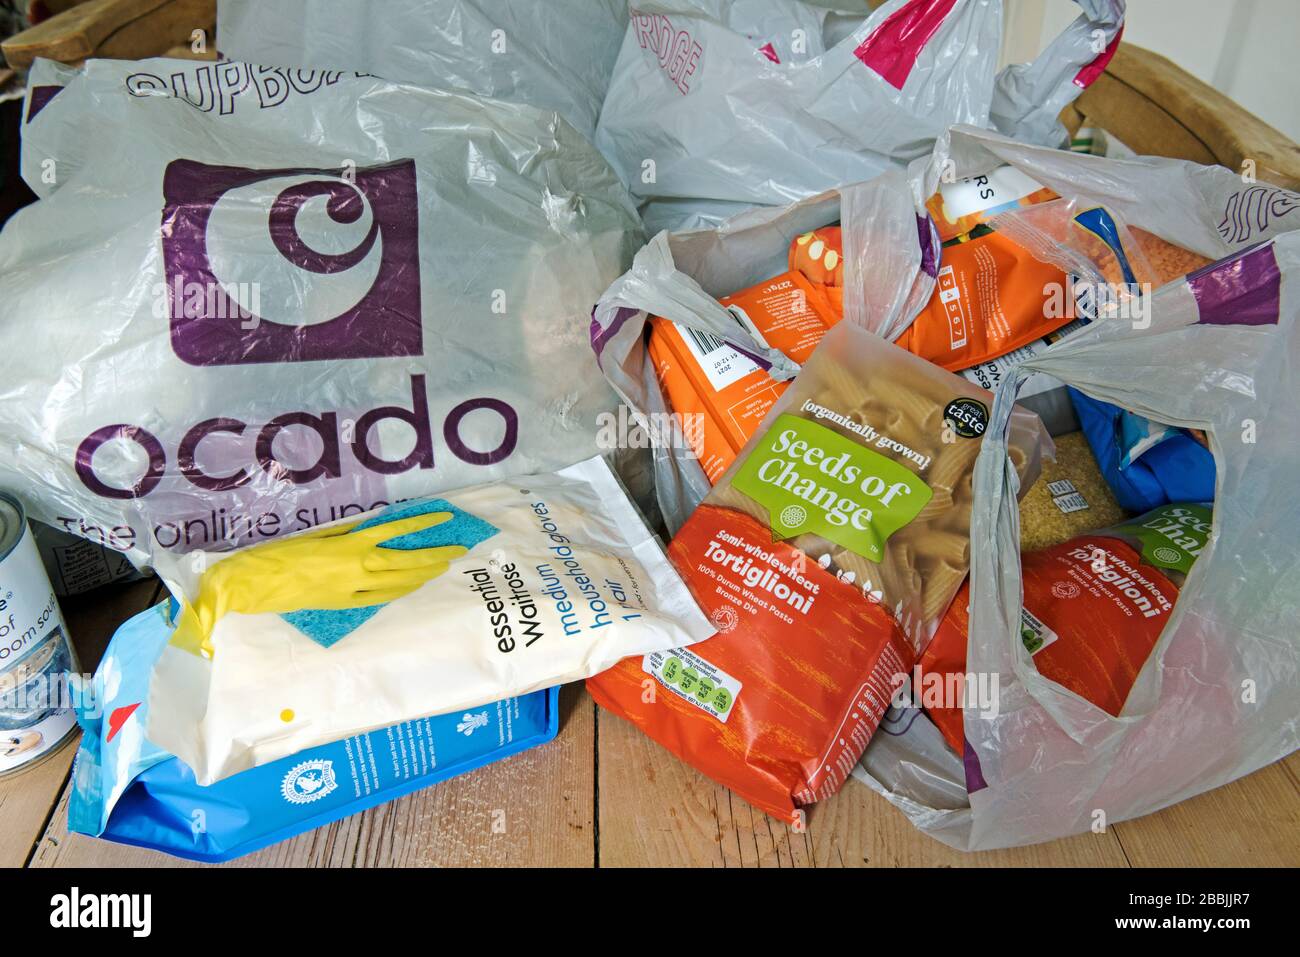 Lebensmittel, die von Ocado in Taschen auf dem Küchentisch geliefert werden Stockfoto